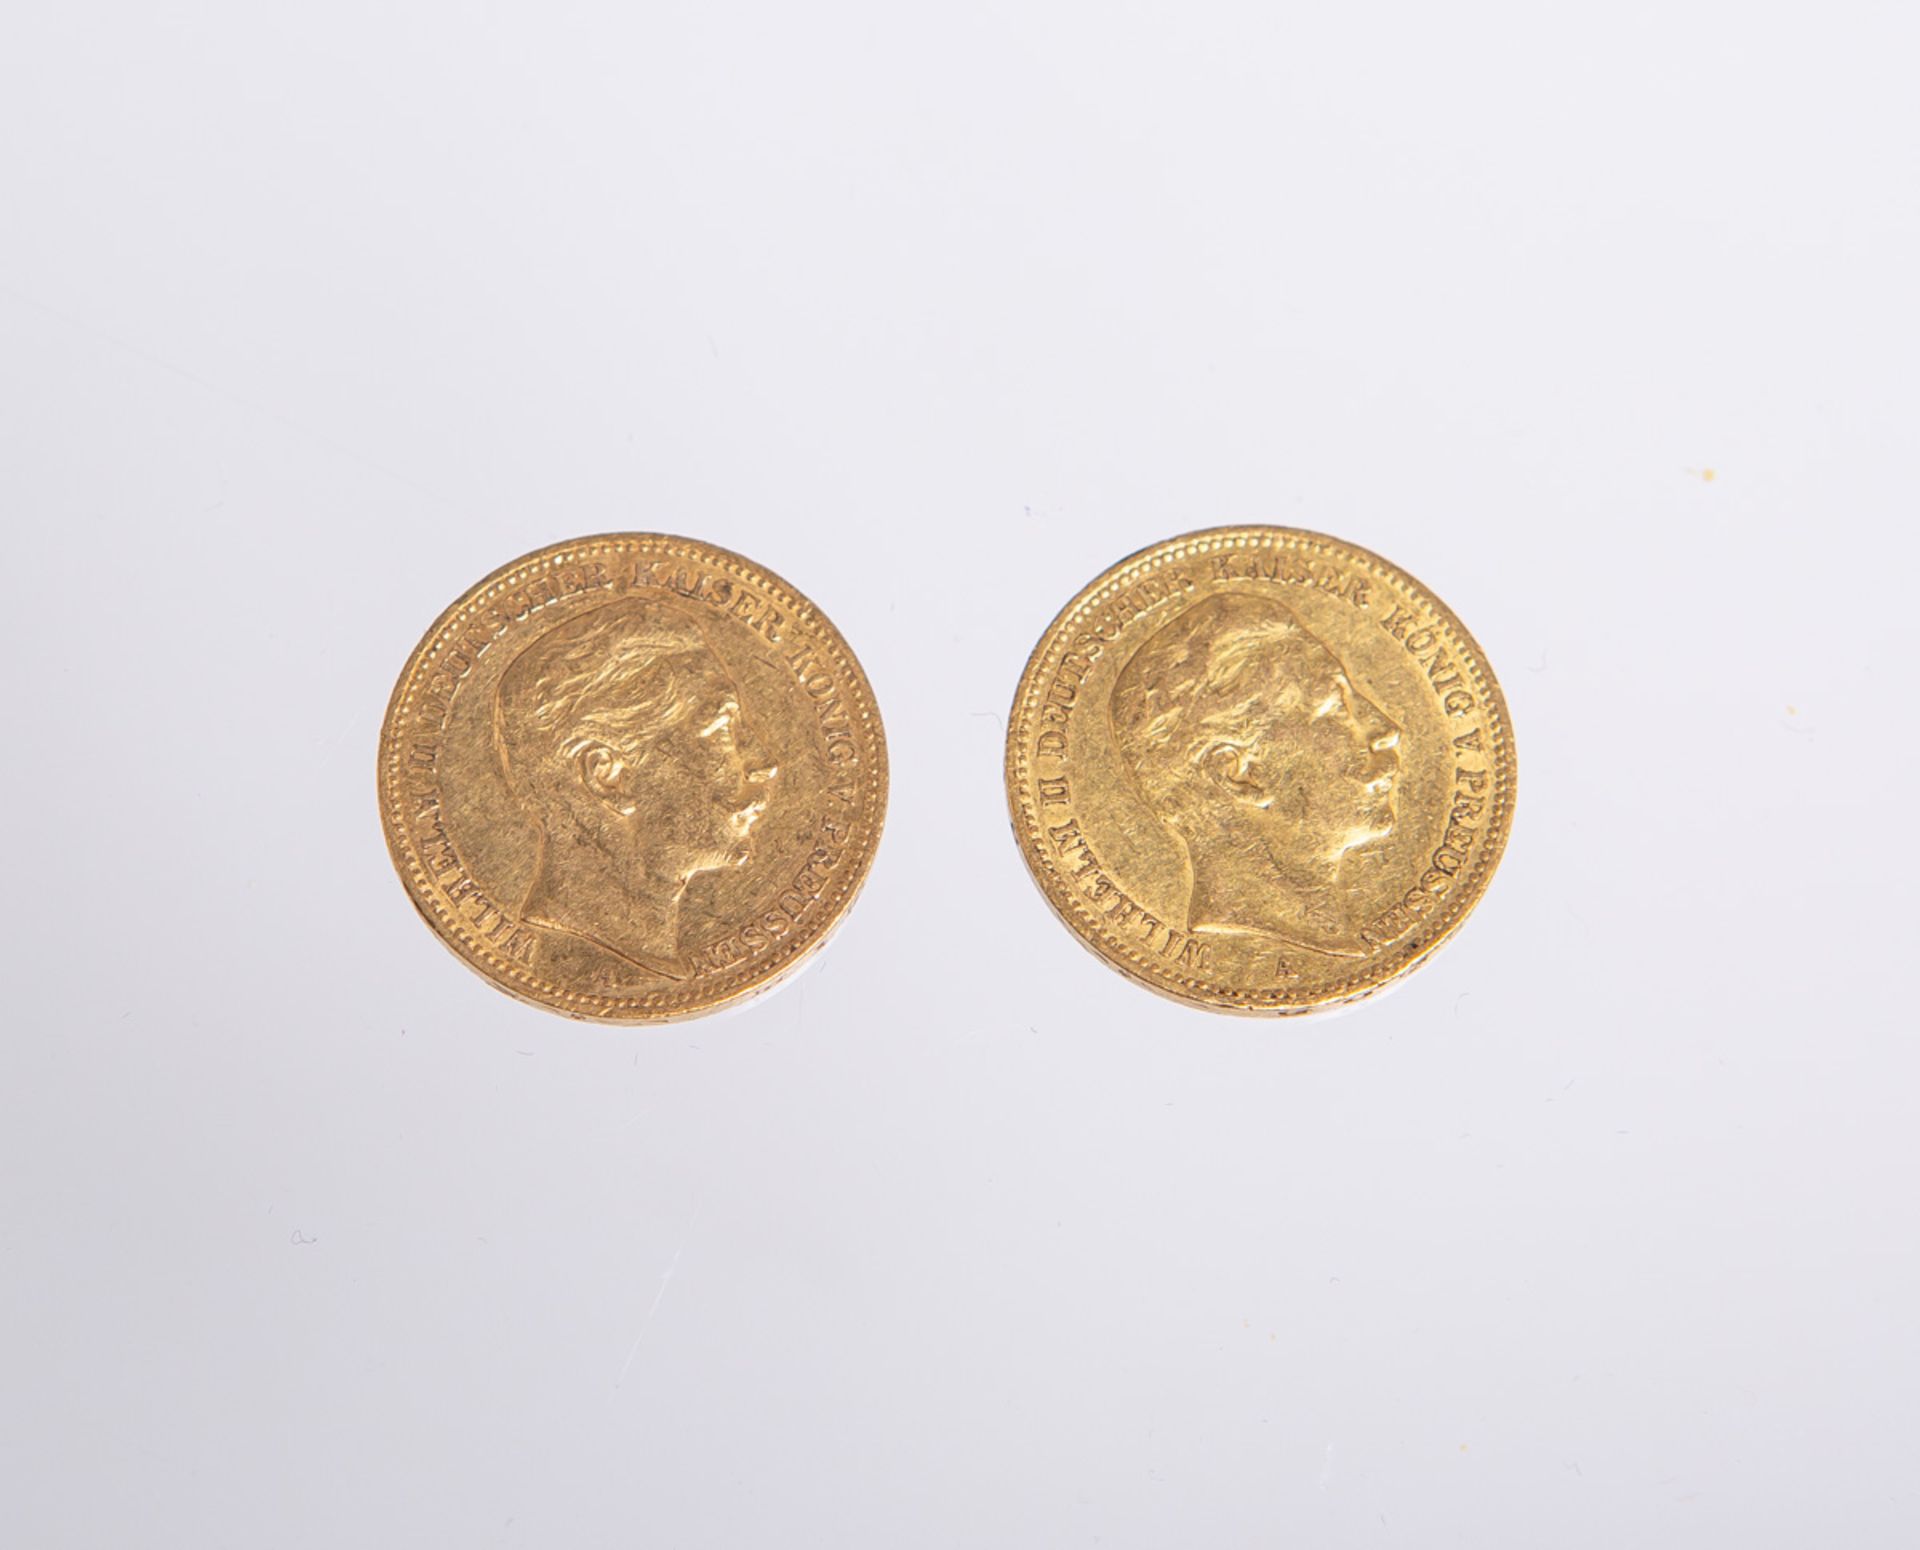 2-teiliges Konvolut von 20-Mark Münzen, "Wilhelm II. Deutscher Kaiser König von Preussen" (Deutsches